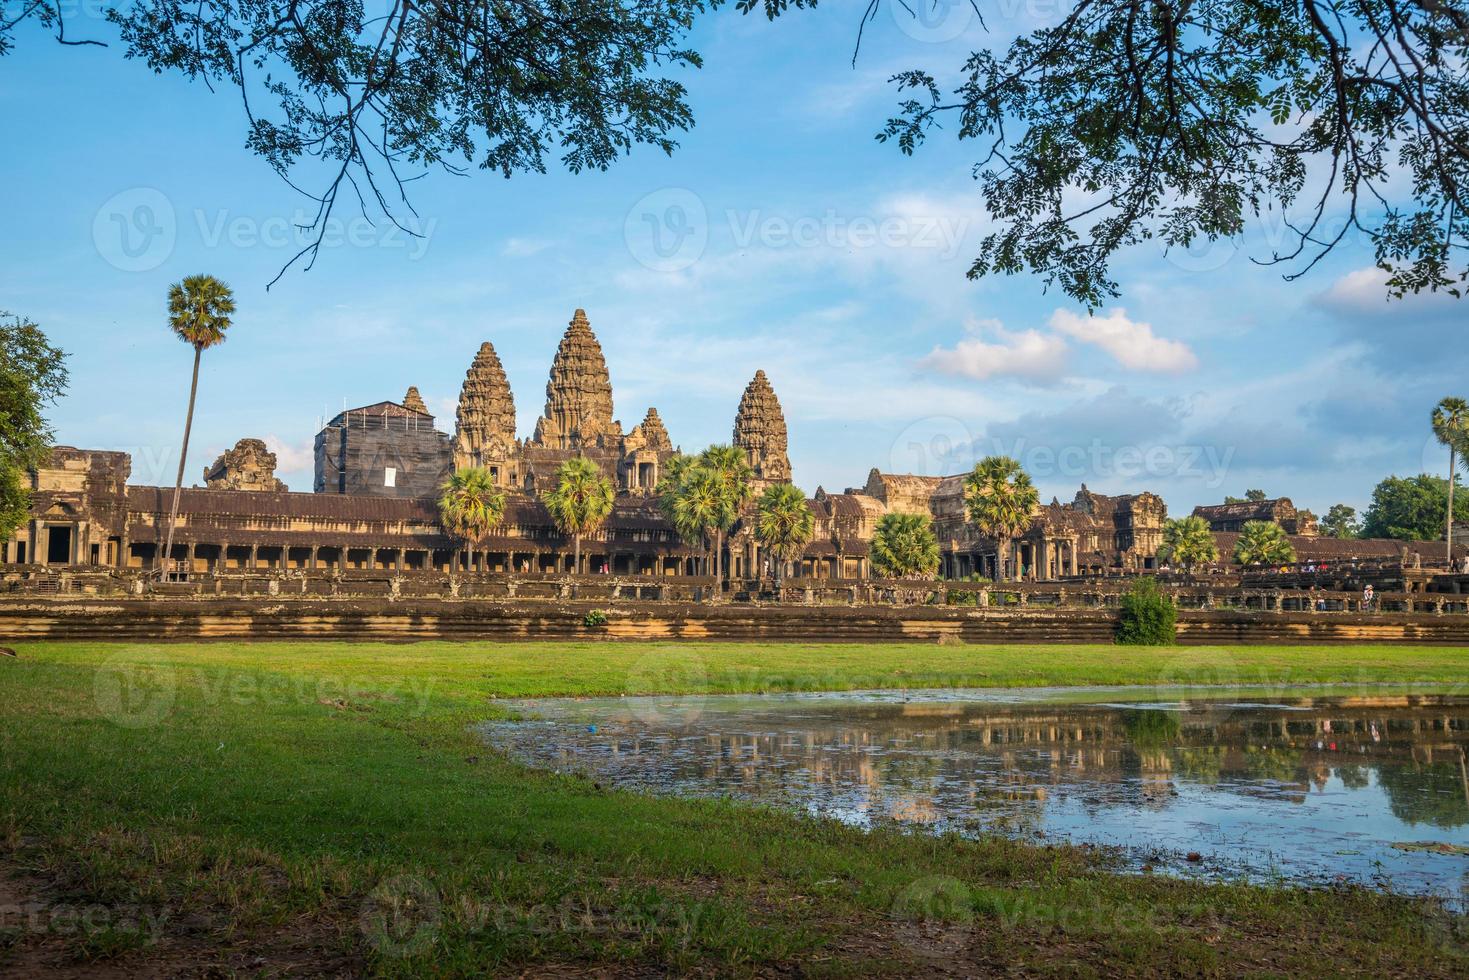 angkor wat é um complexo de templos no Camboja e o maior monumento religioso do mundo. localizado na província de siem reap do camboja. foto